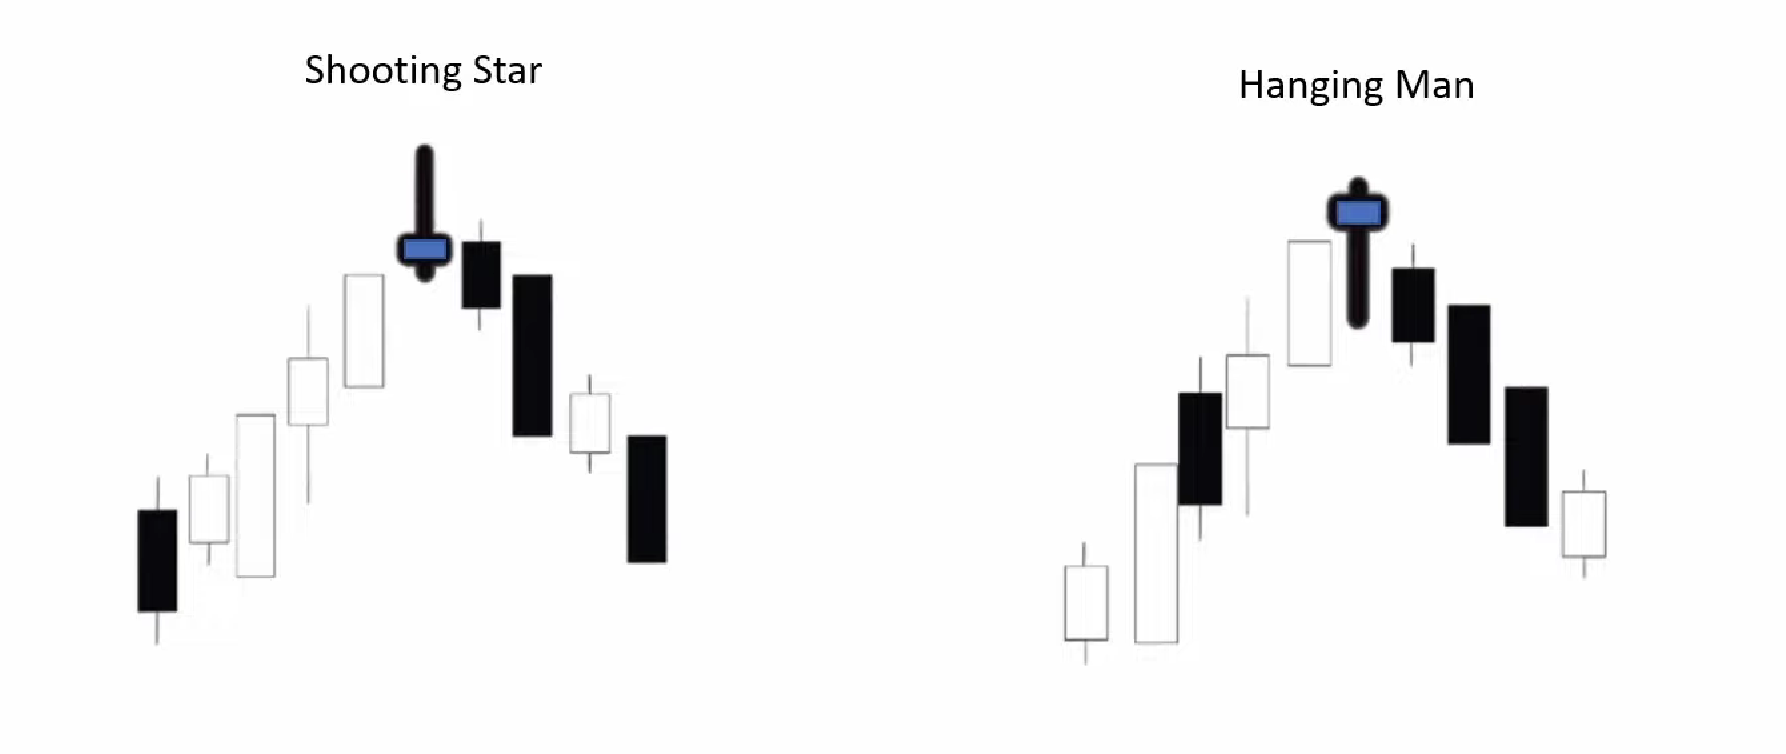 bearish pin bar price pattern